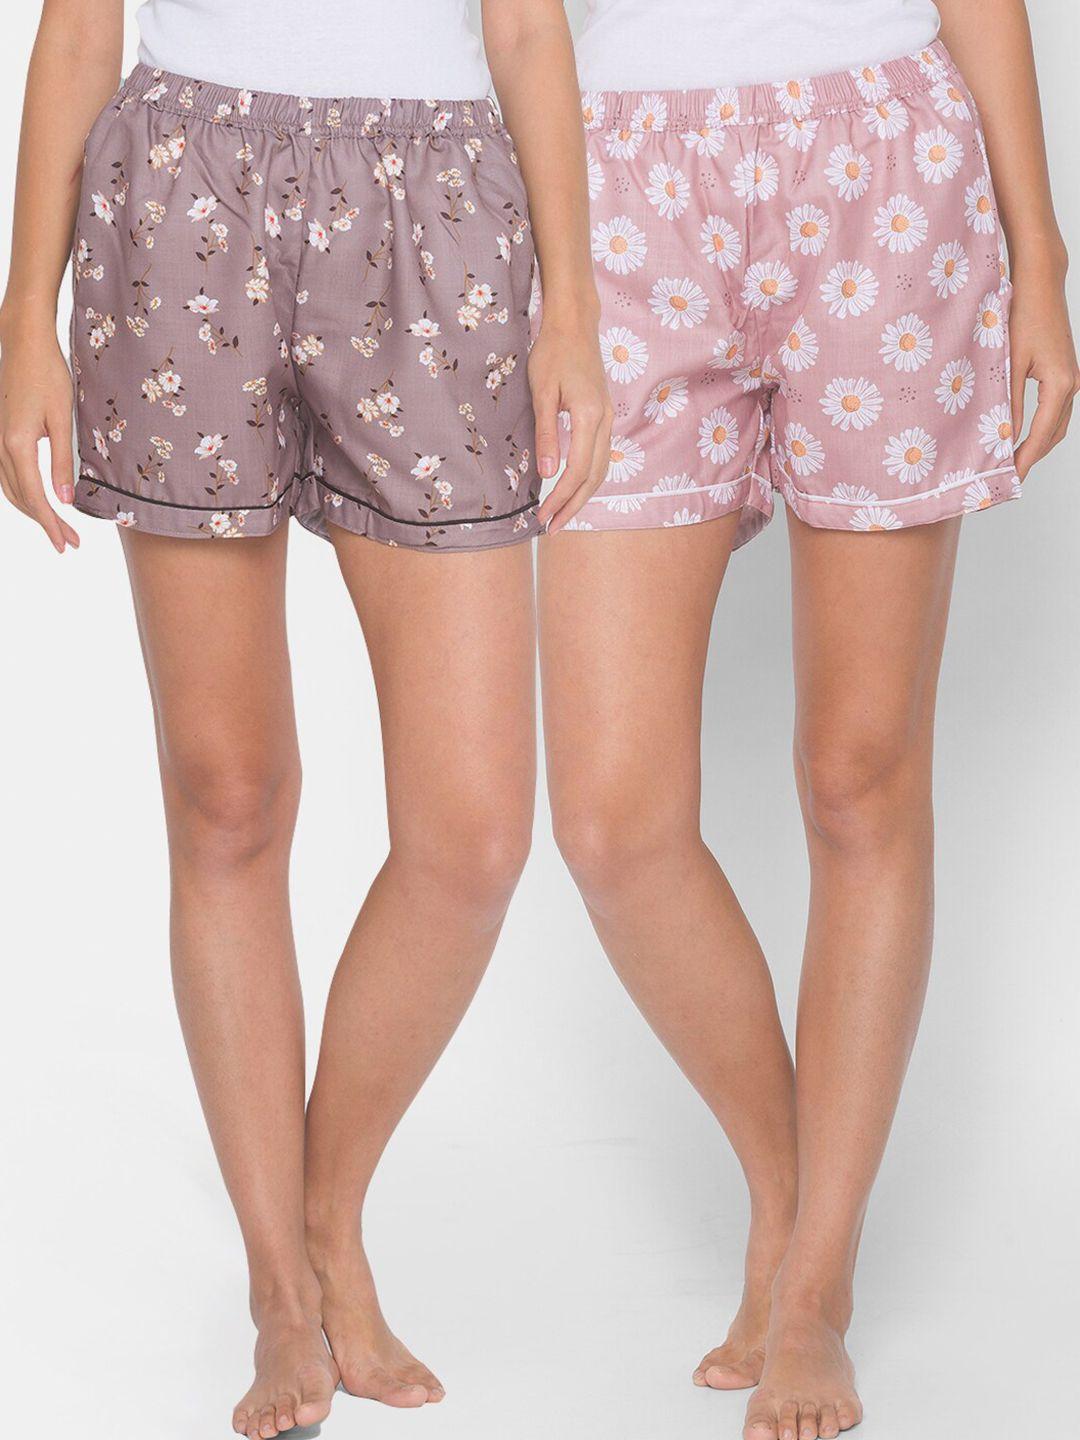 fashionrack-women-brown-&-pink-2-printed-lounge-shorts